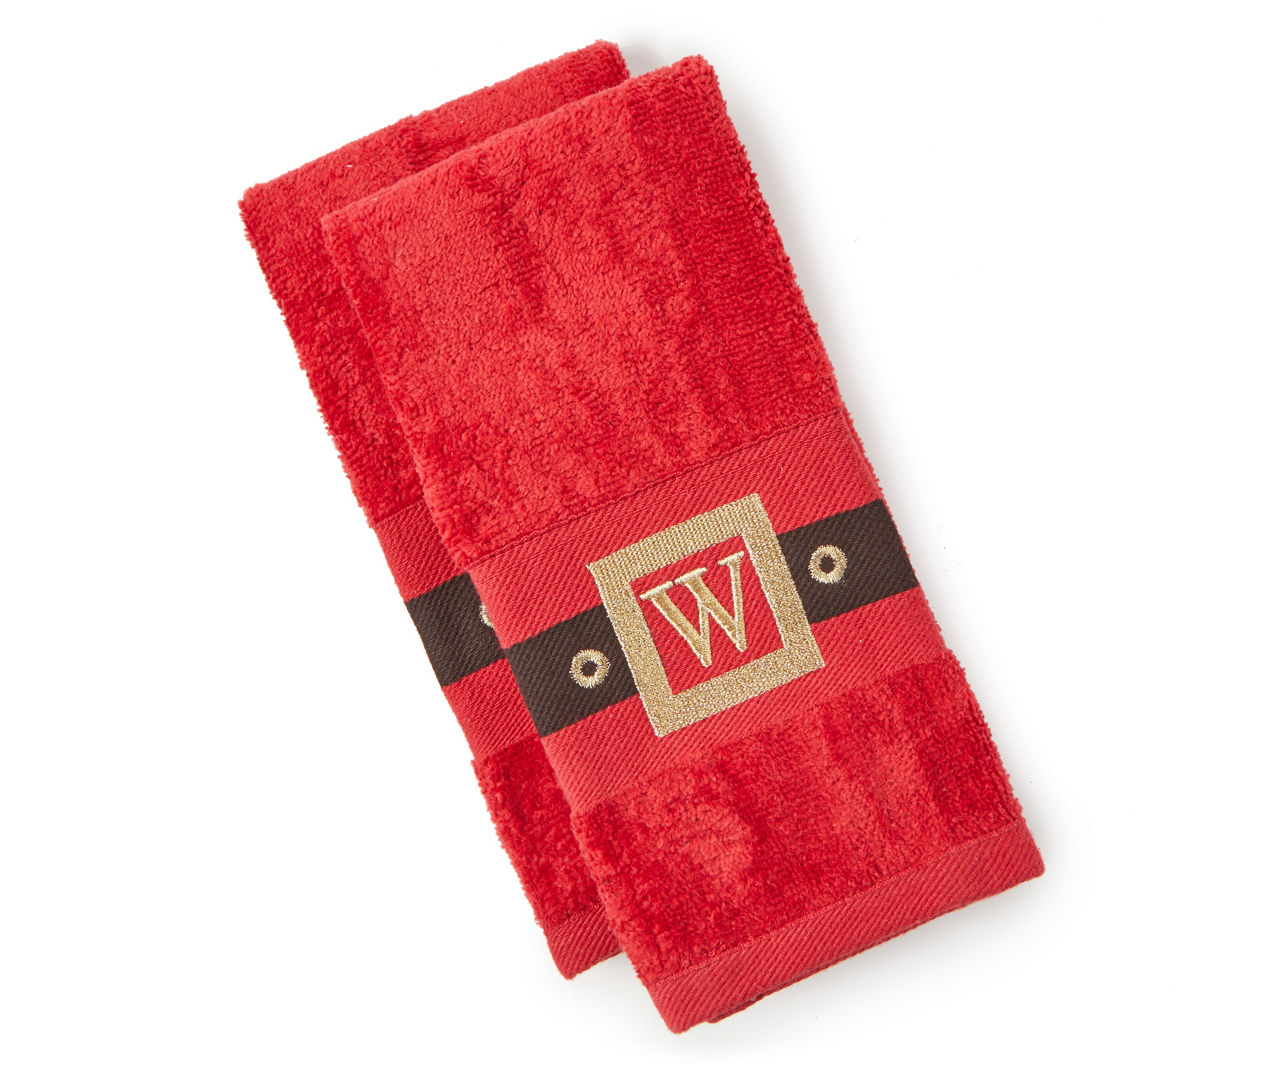 "W" Red, Black & Gold Santa Belt Monogram Fingertip Towels, 2-Pack